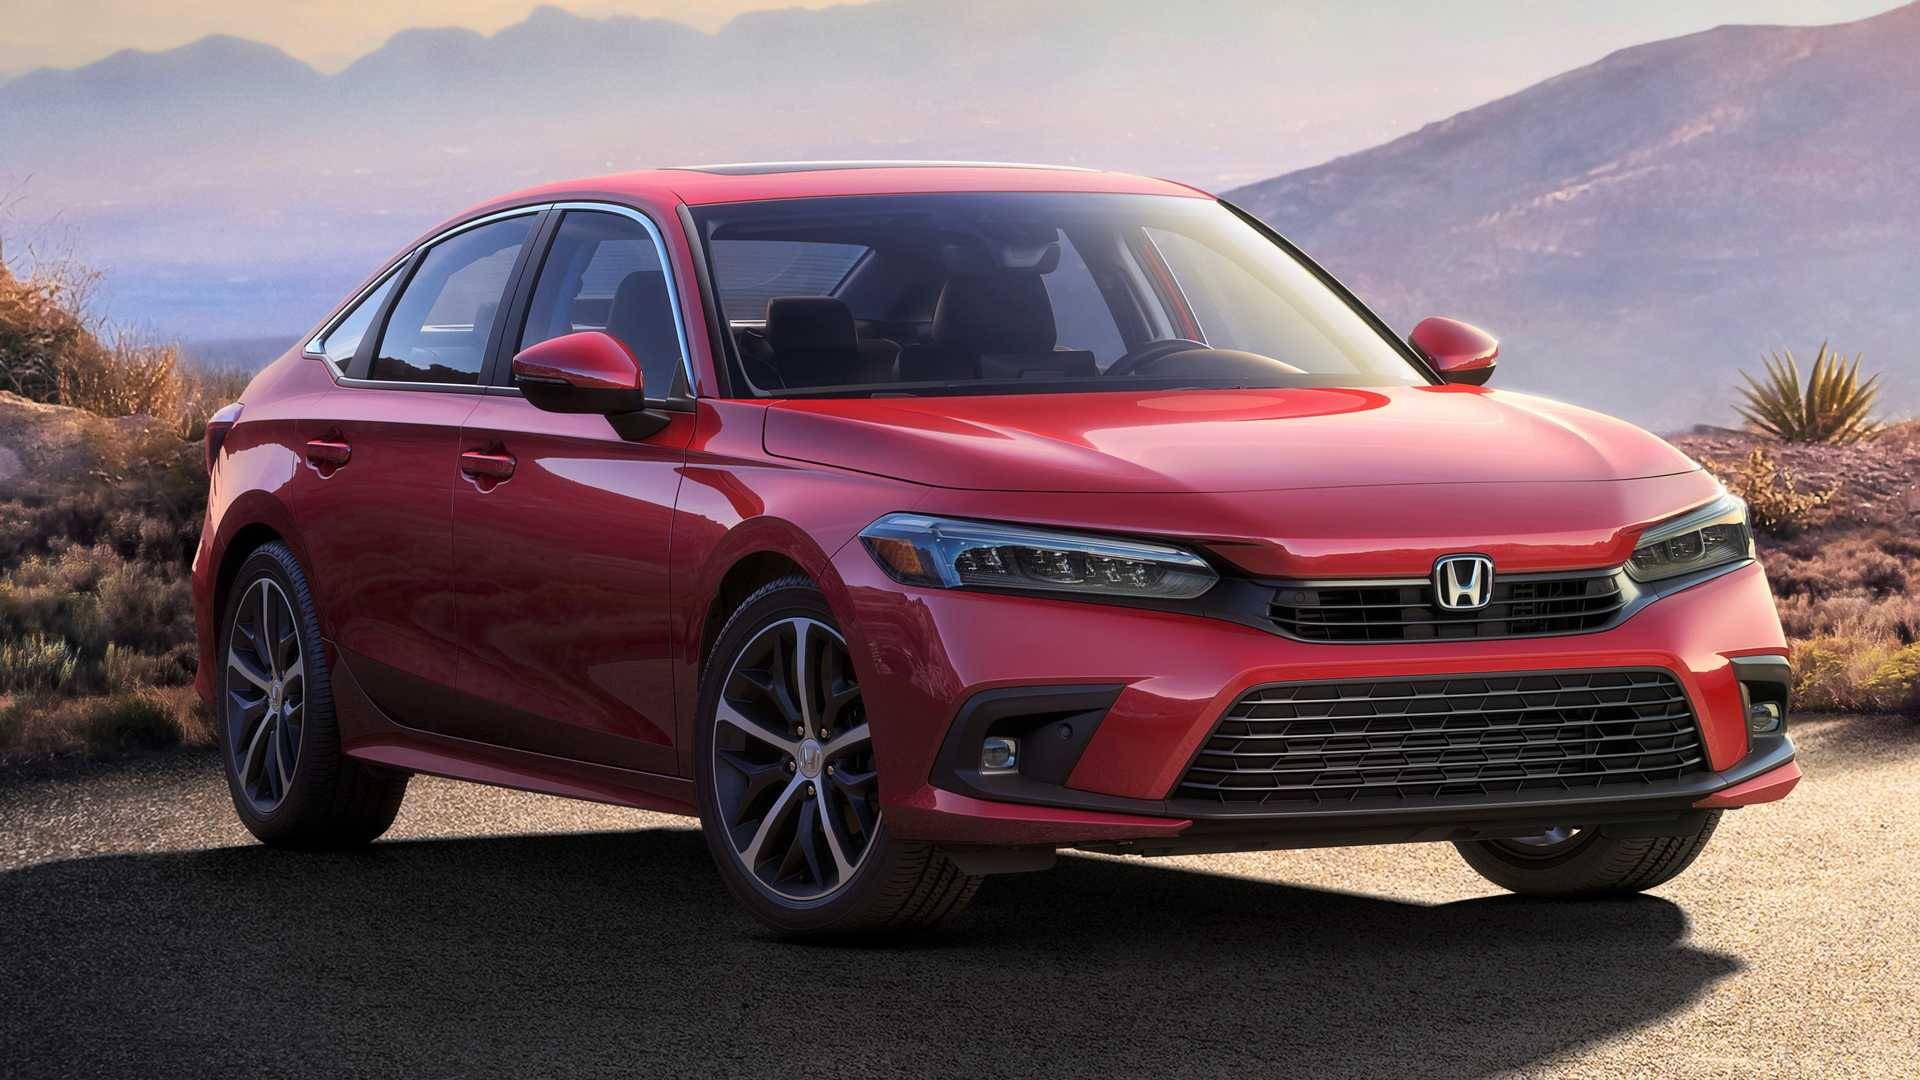 Novo Honda Civic 2022 é revelado em foto oficial – Garagem SE